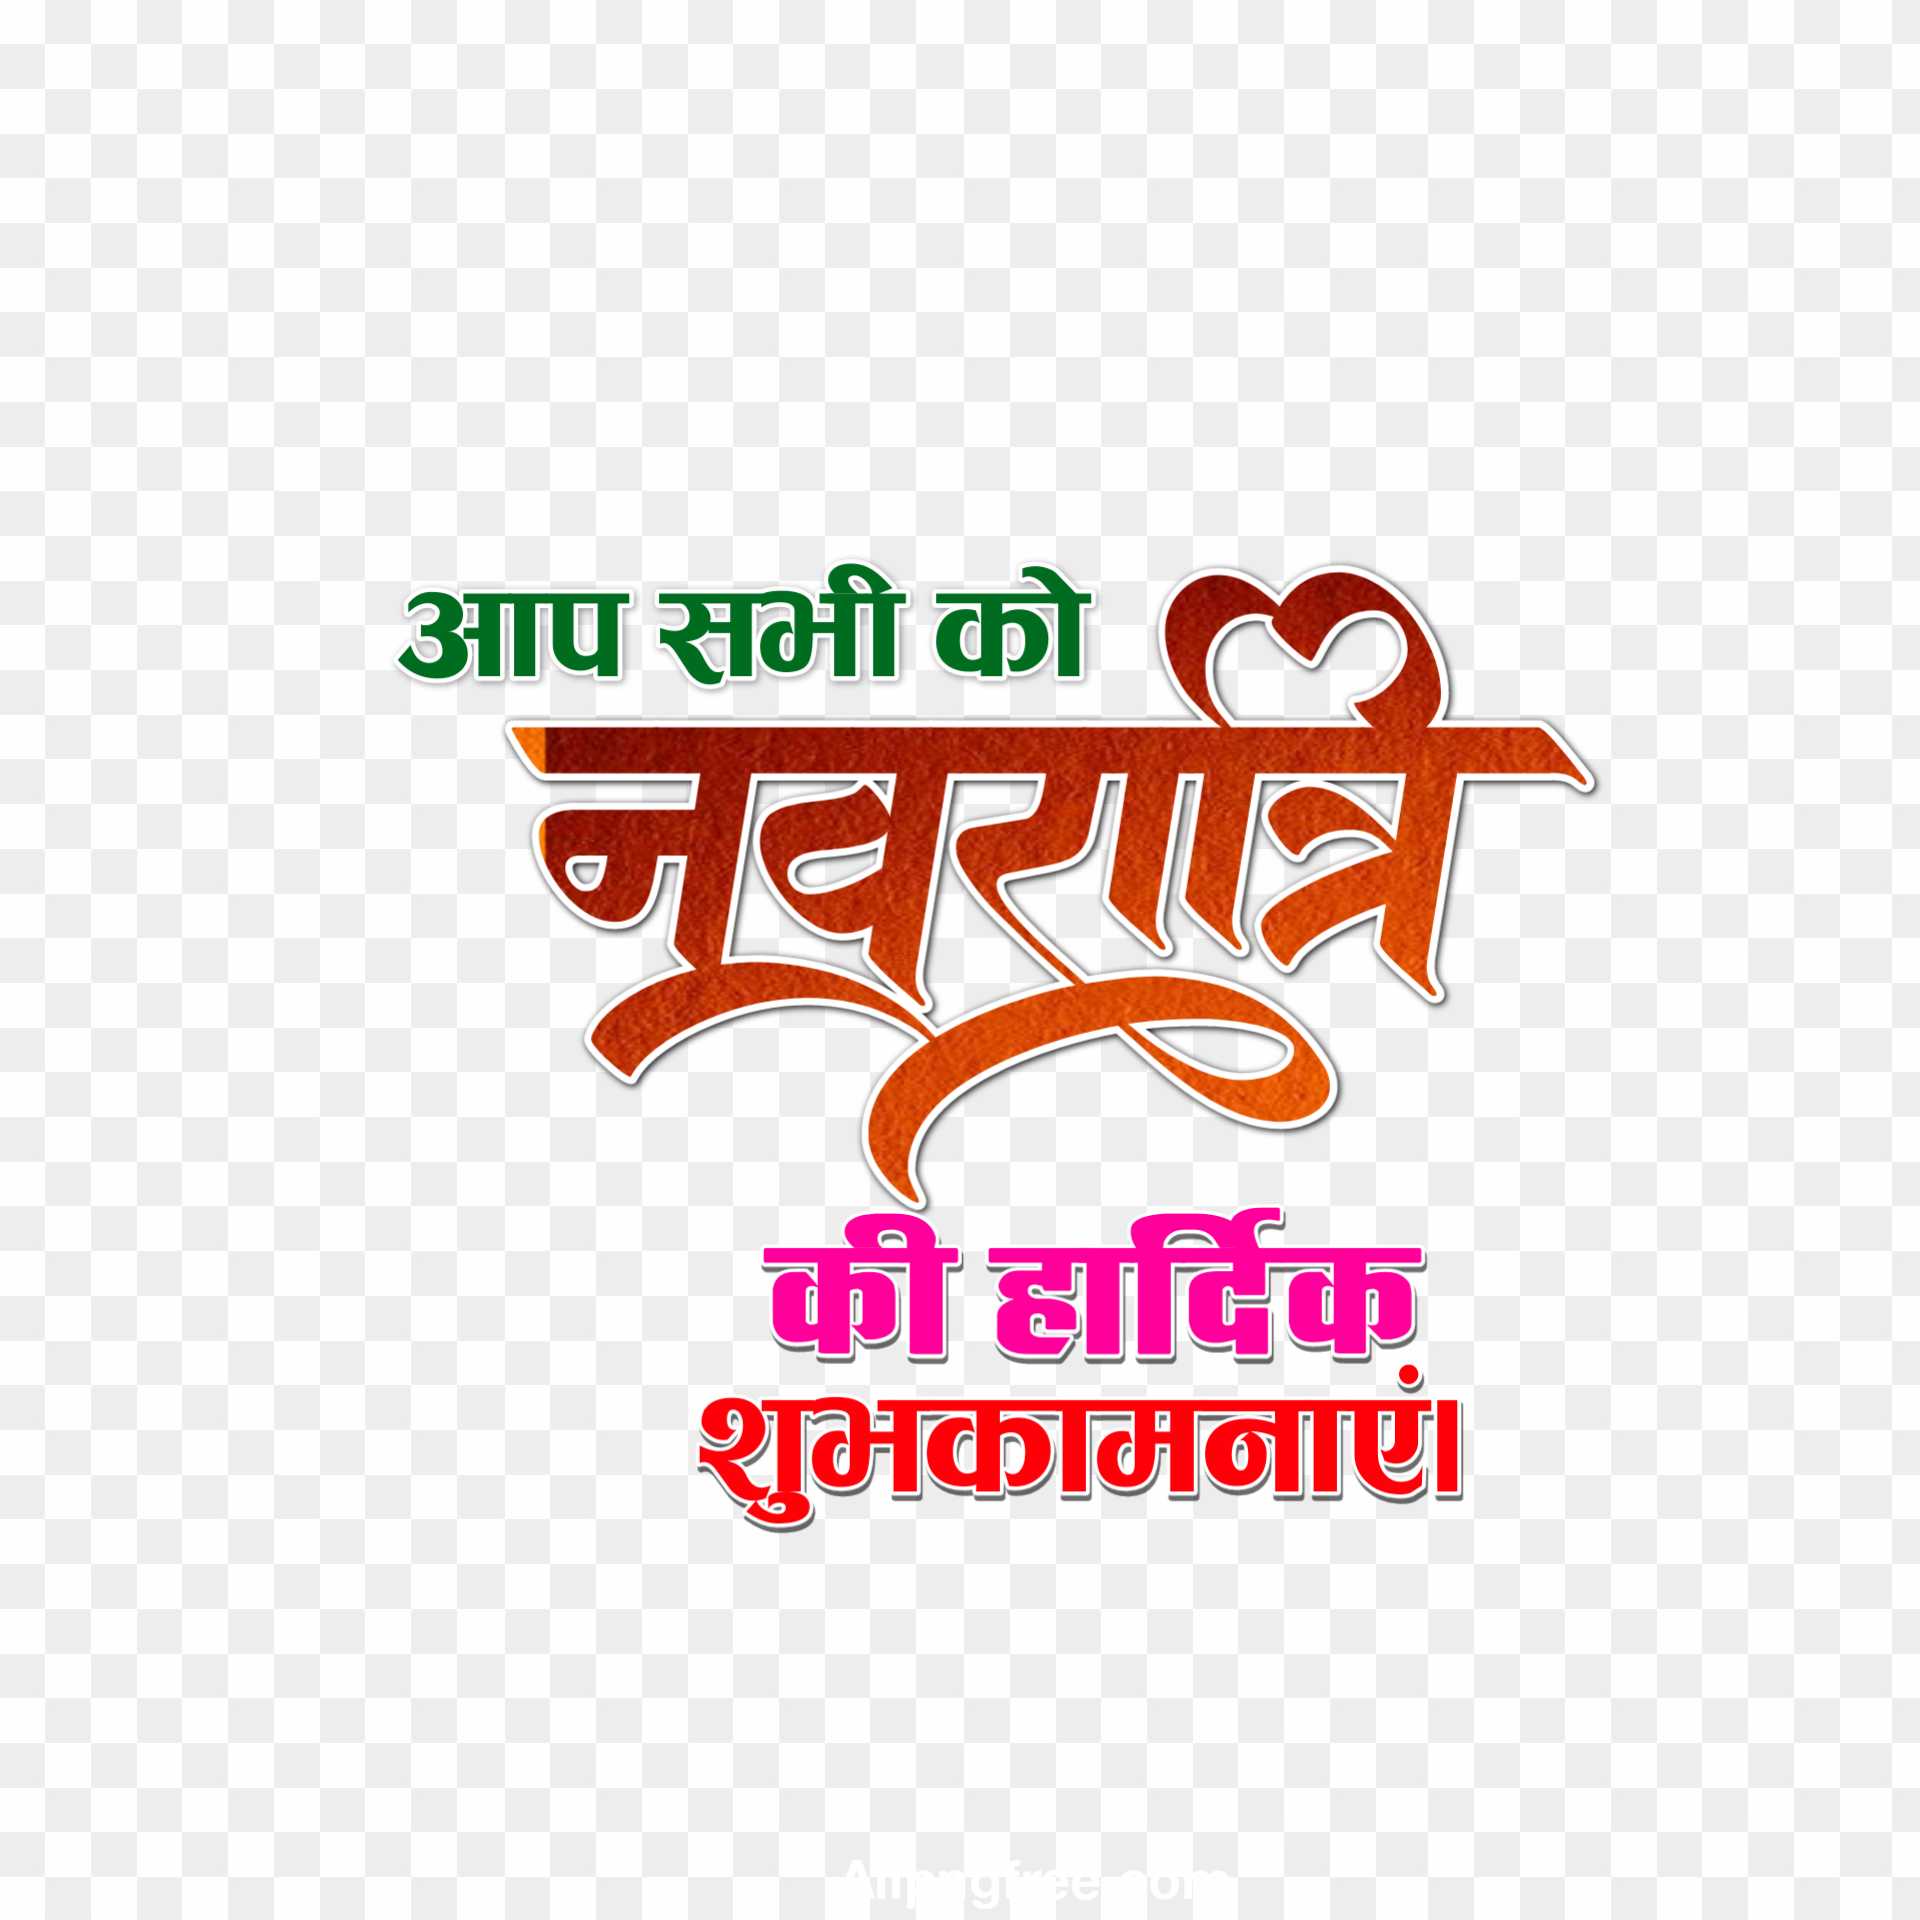 Happy navratri in hindi text PNG 